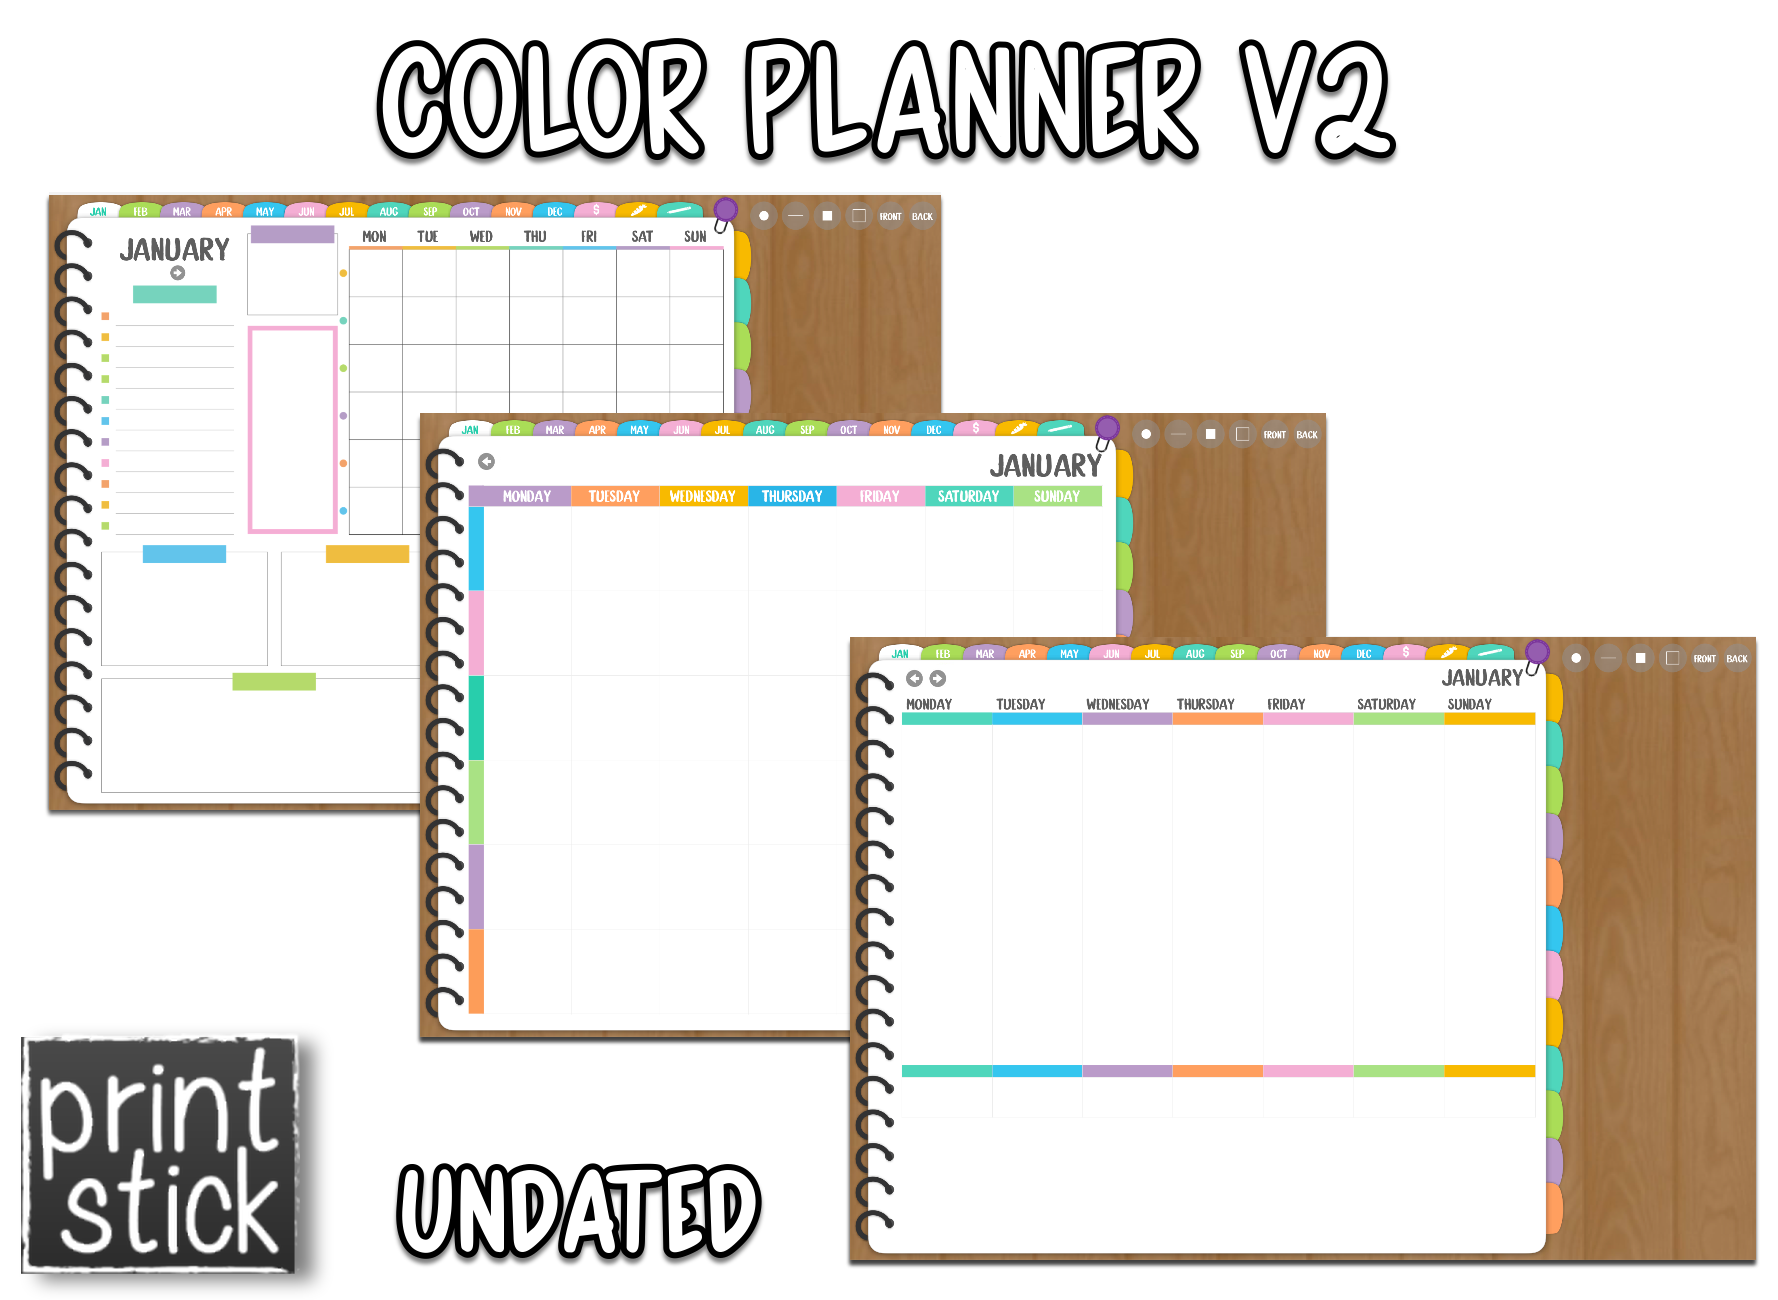 Color Planner V2 - Digital Planner - Print Stick